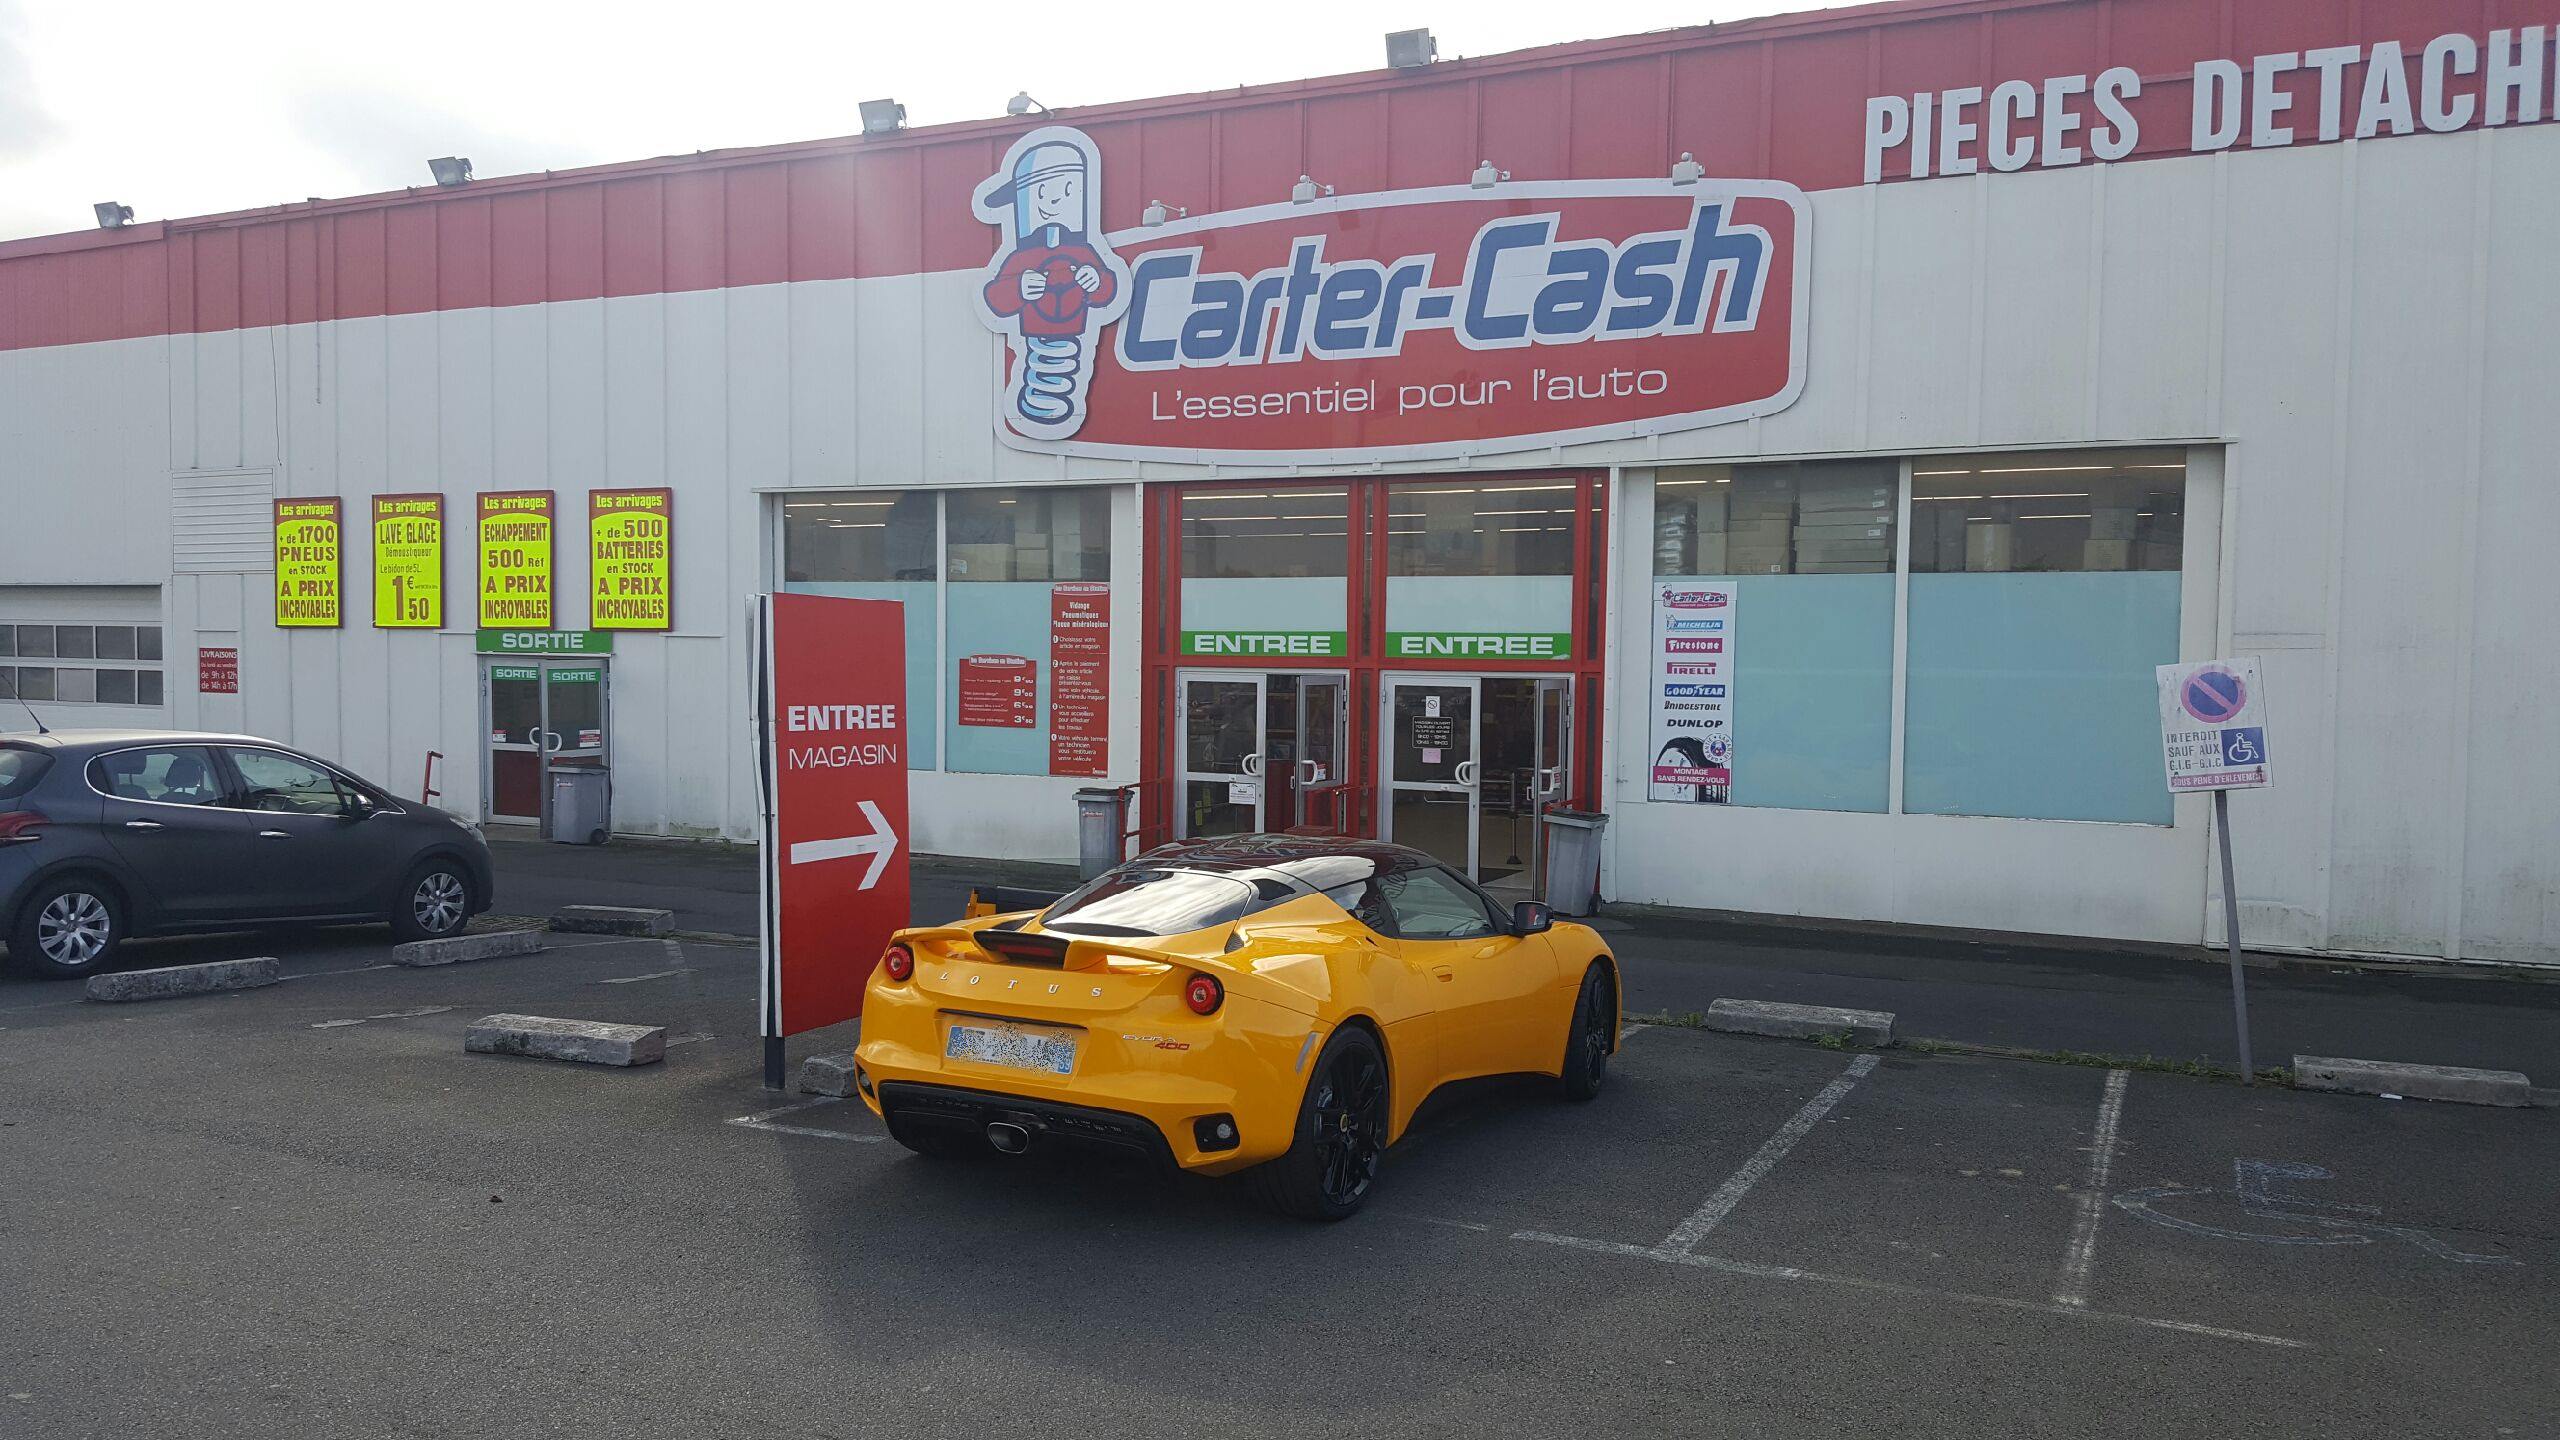 Lotus Evora Top jaune devant le magasin Carter-Cash de Capinghem